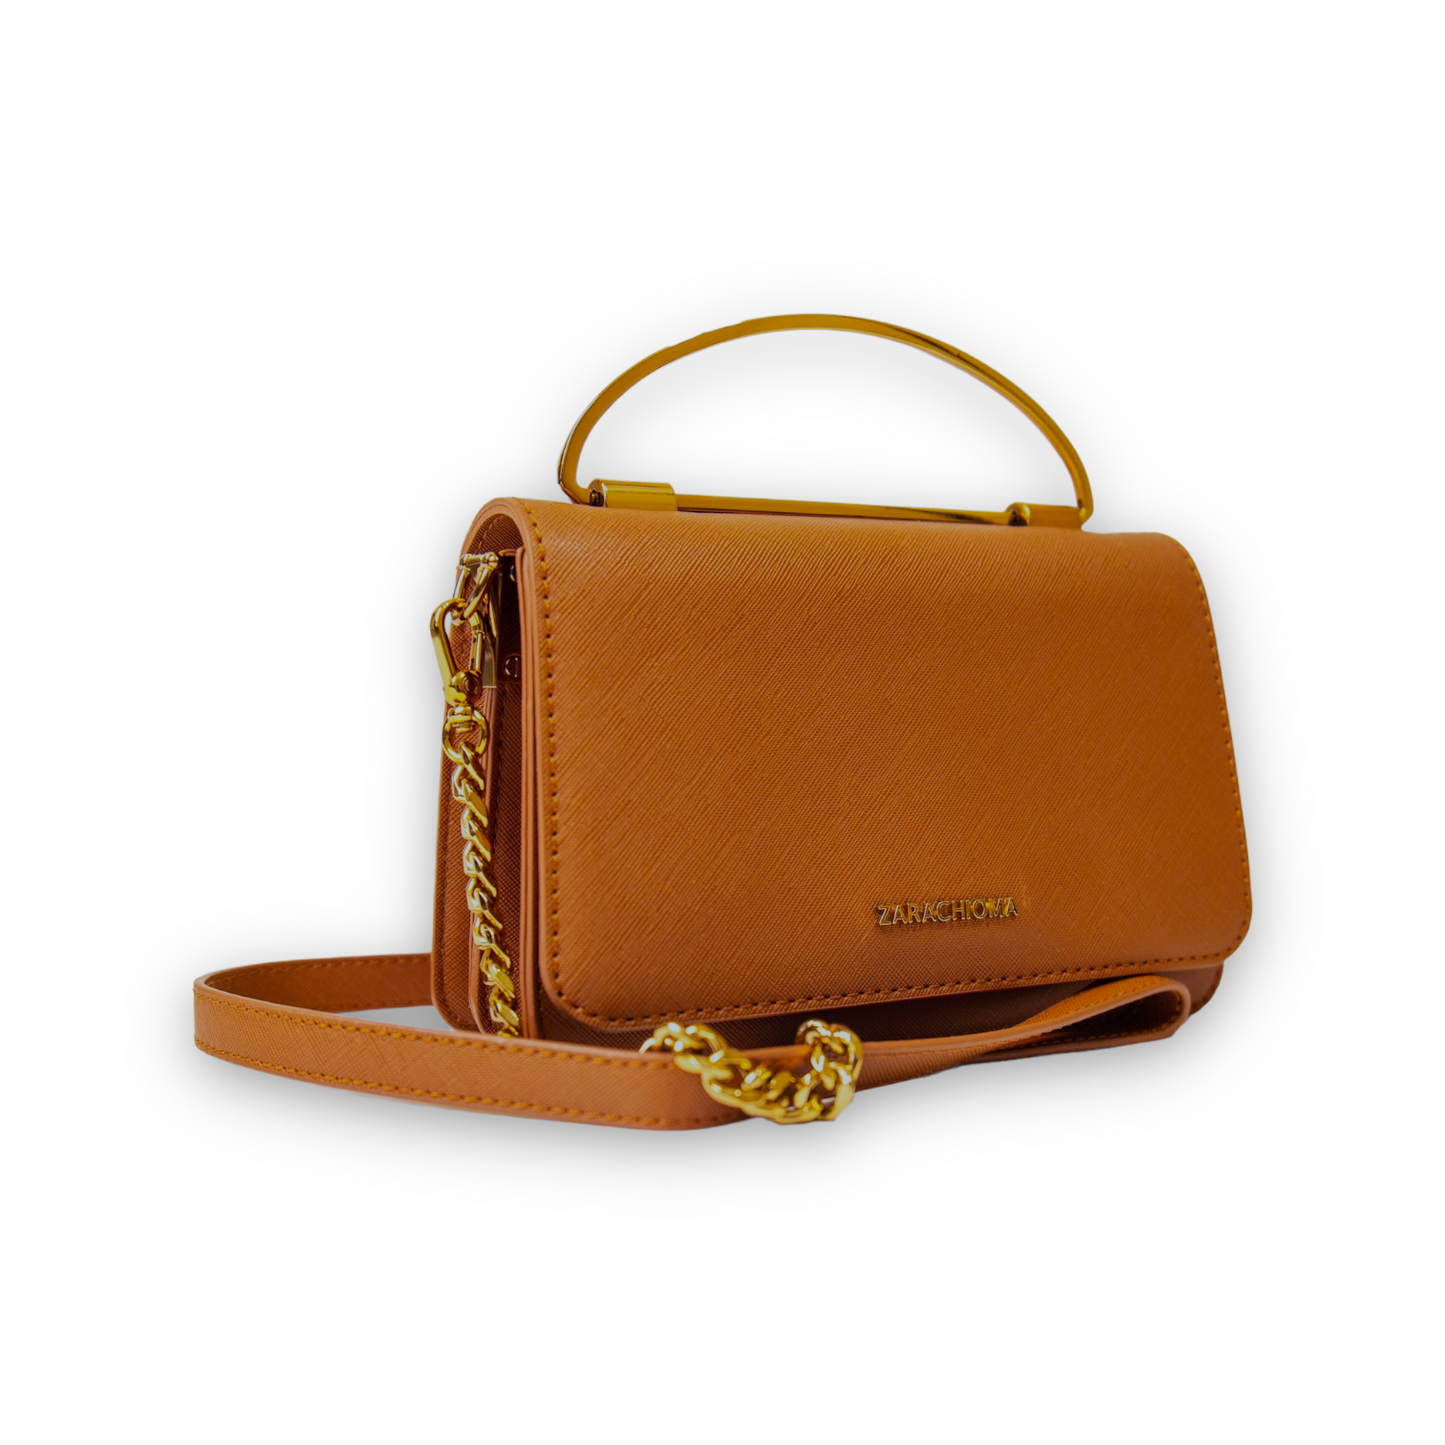 Winnie Mini Front Flap Top Handle bag in Cognac Brown